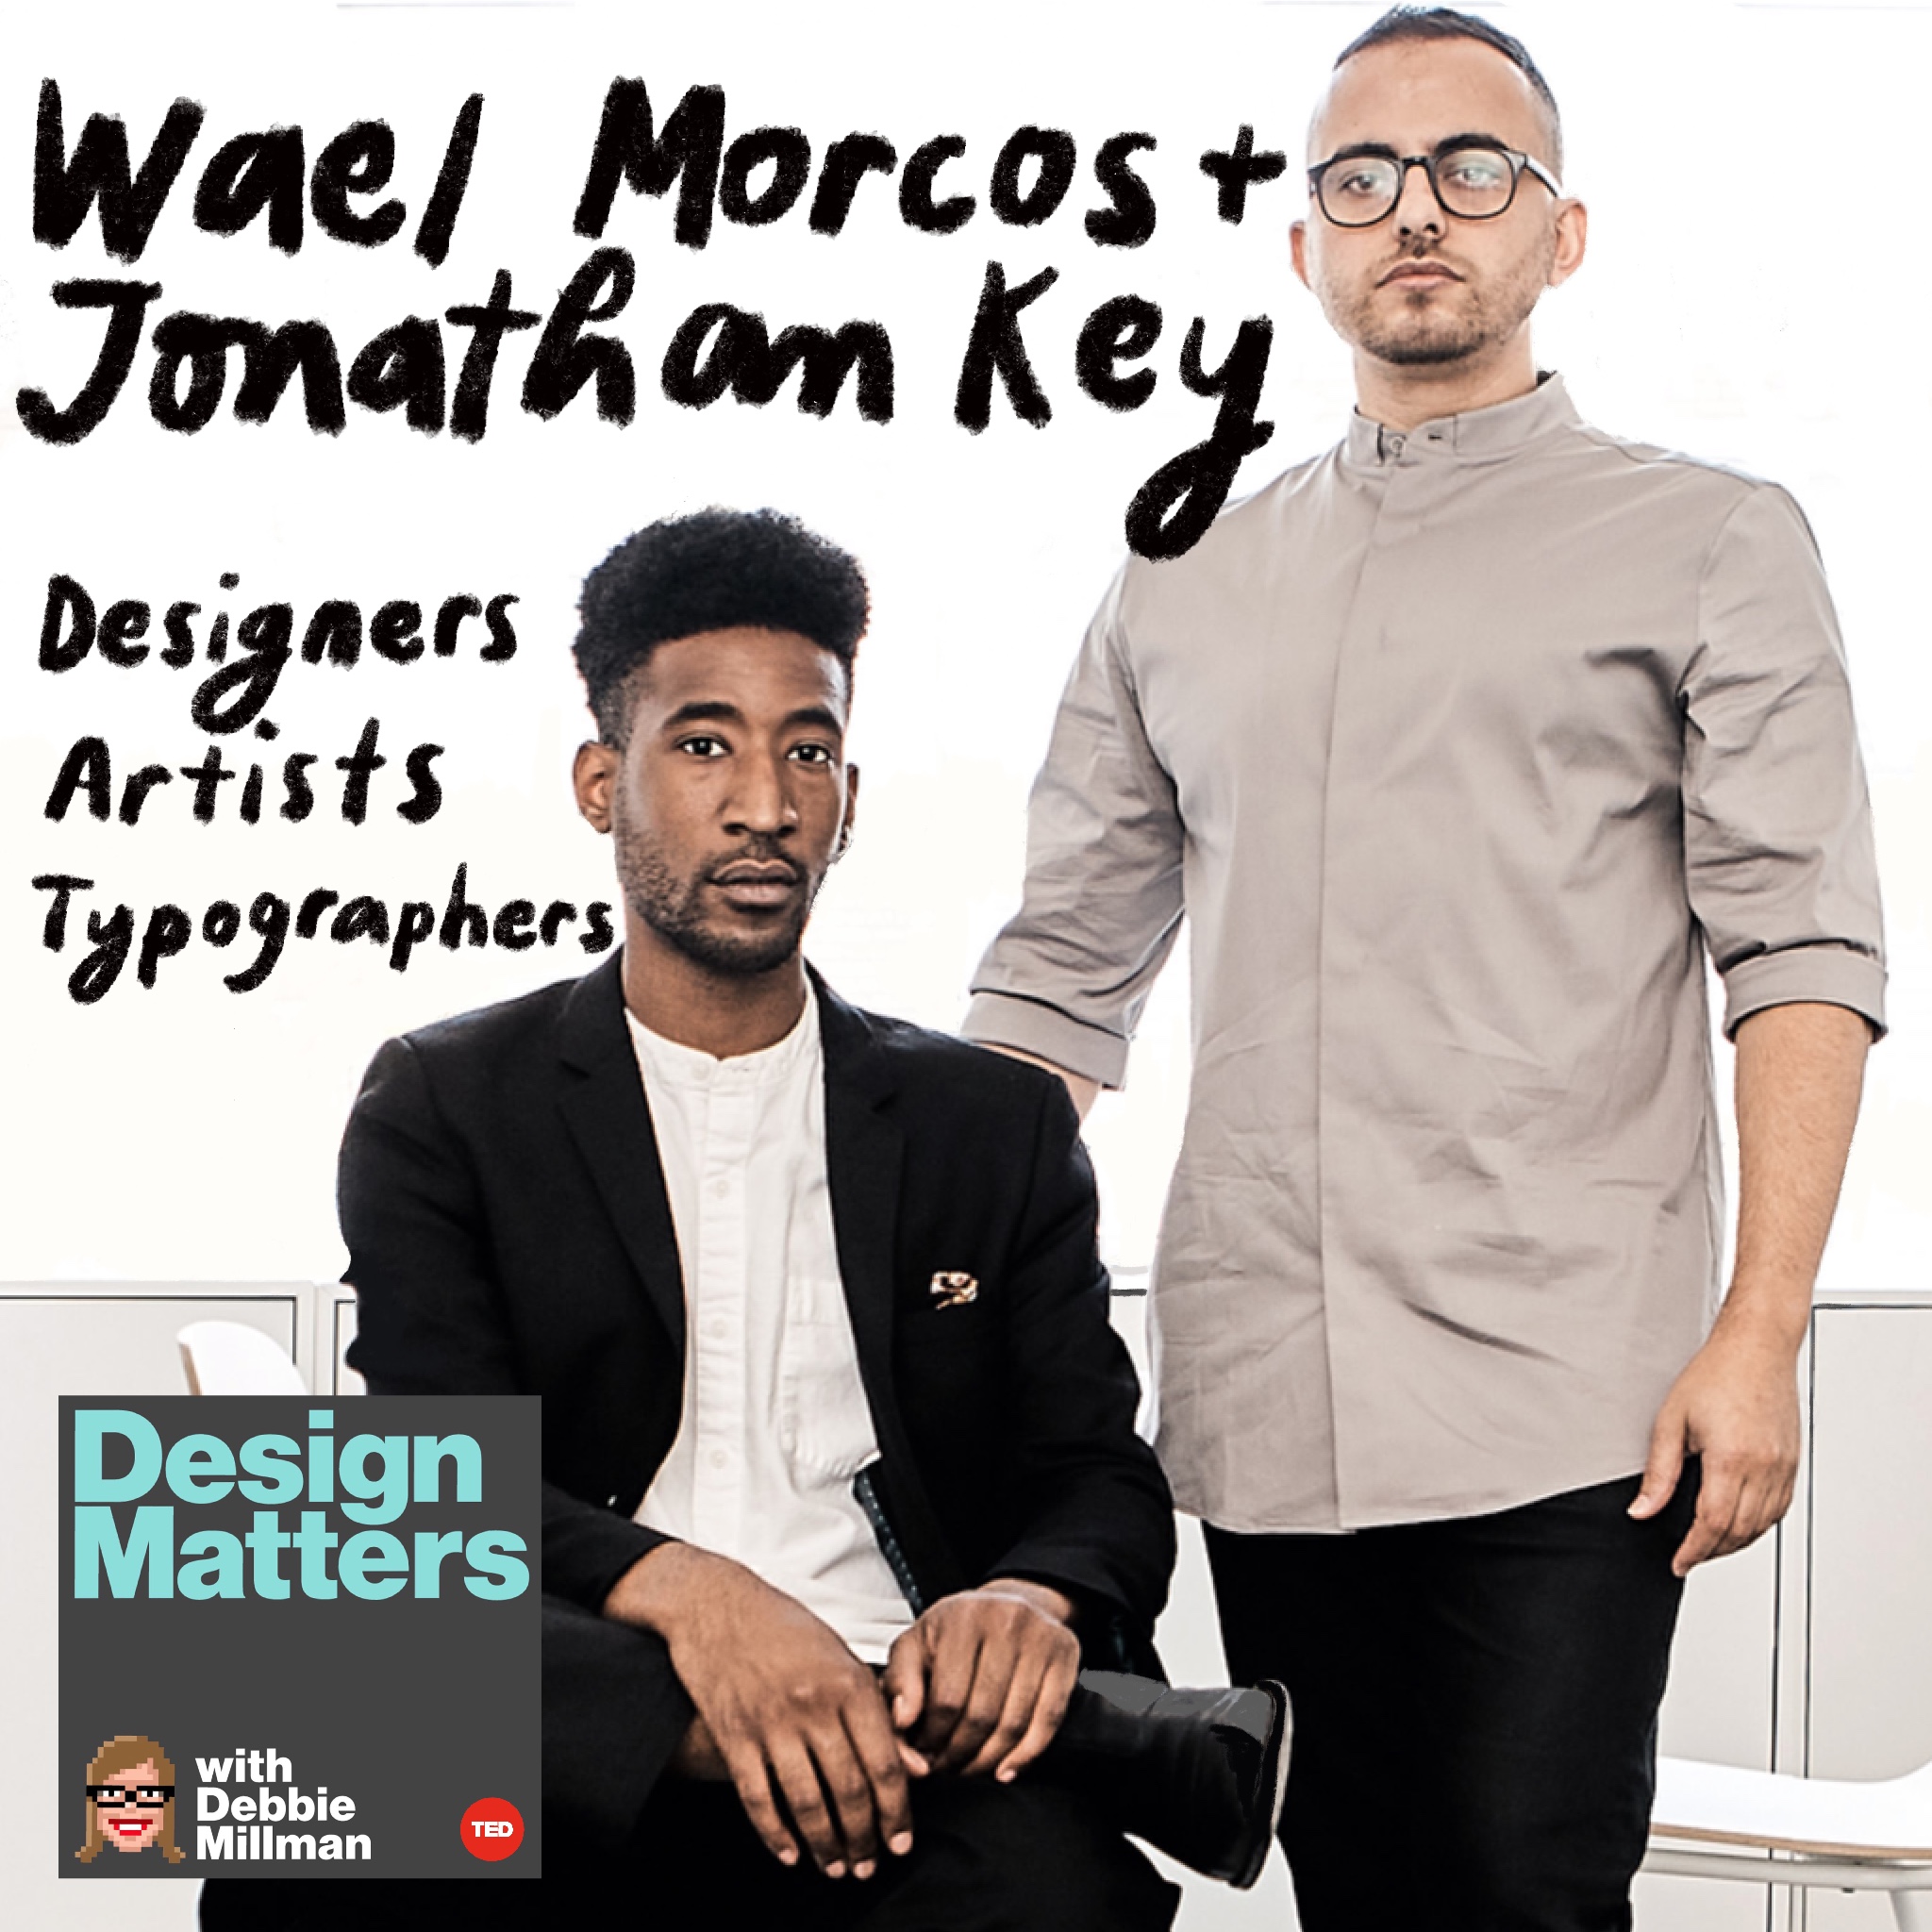 Wael Morcos & Jonathan Key